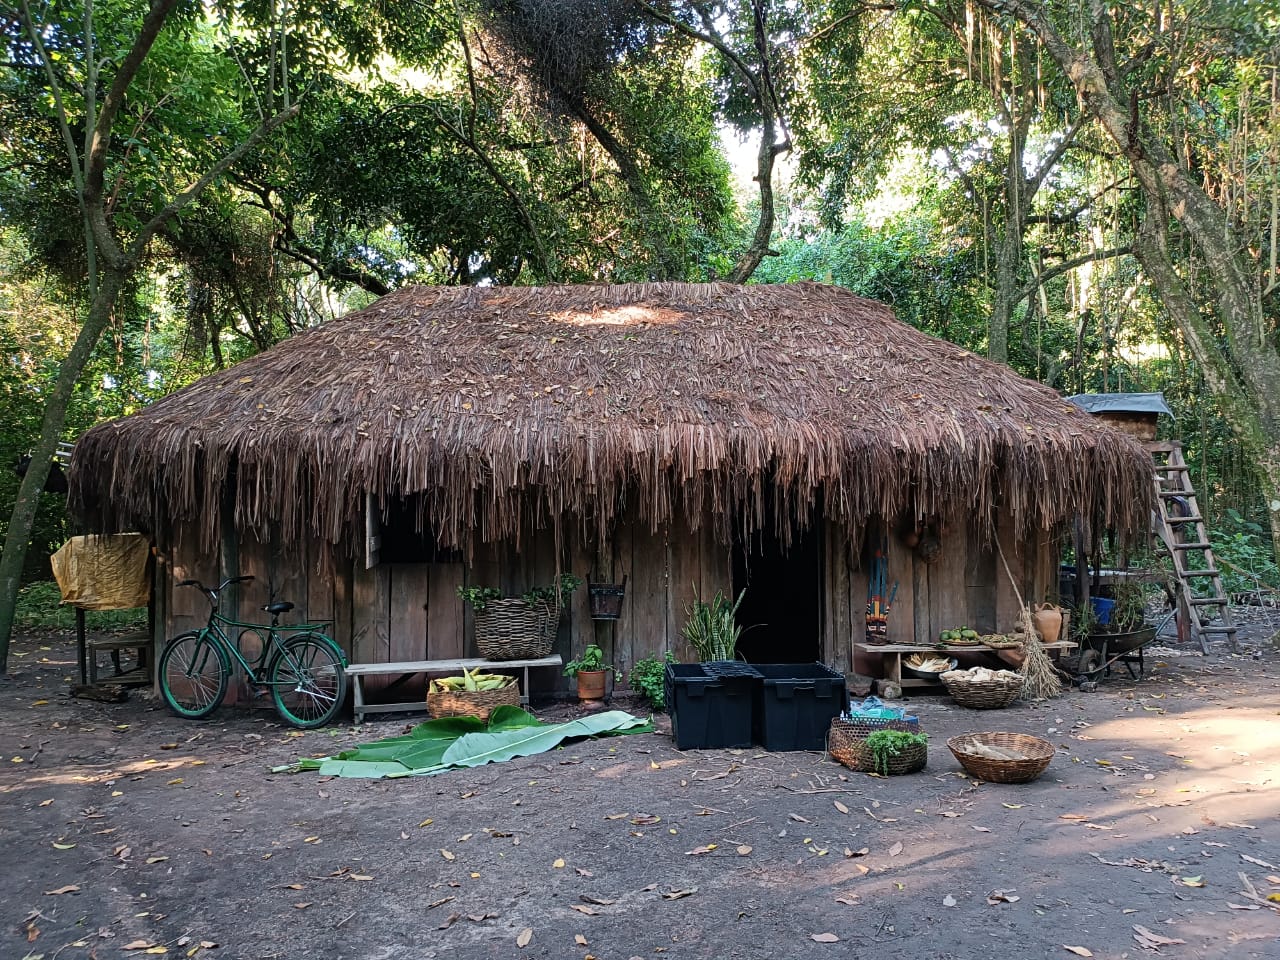 Casa indígena tradicional construída com consultoria de Luan Iturv e Fabiana Fernandes, no Projac, nos Estúdios Globo. Foto: Arquivo pessoal ao TeatrineTV